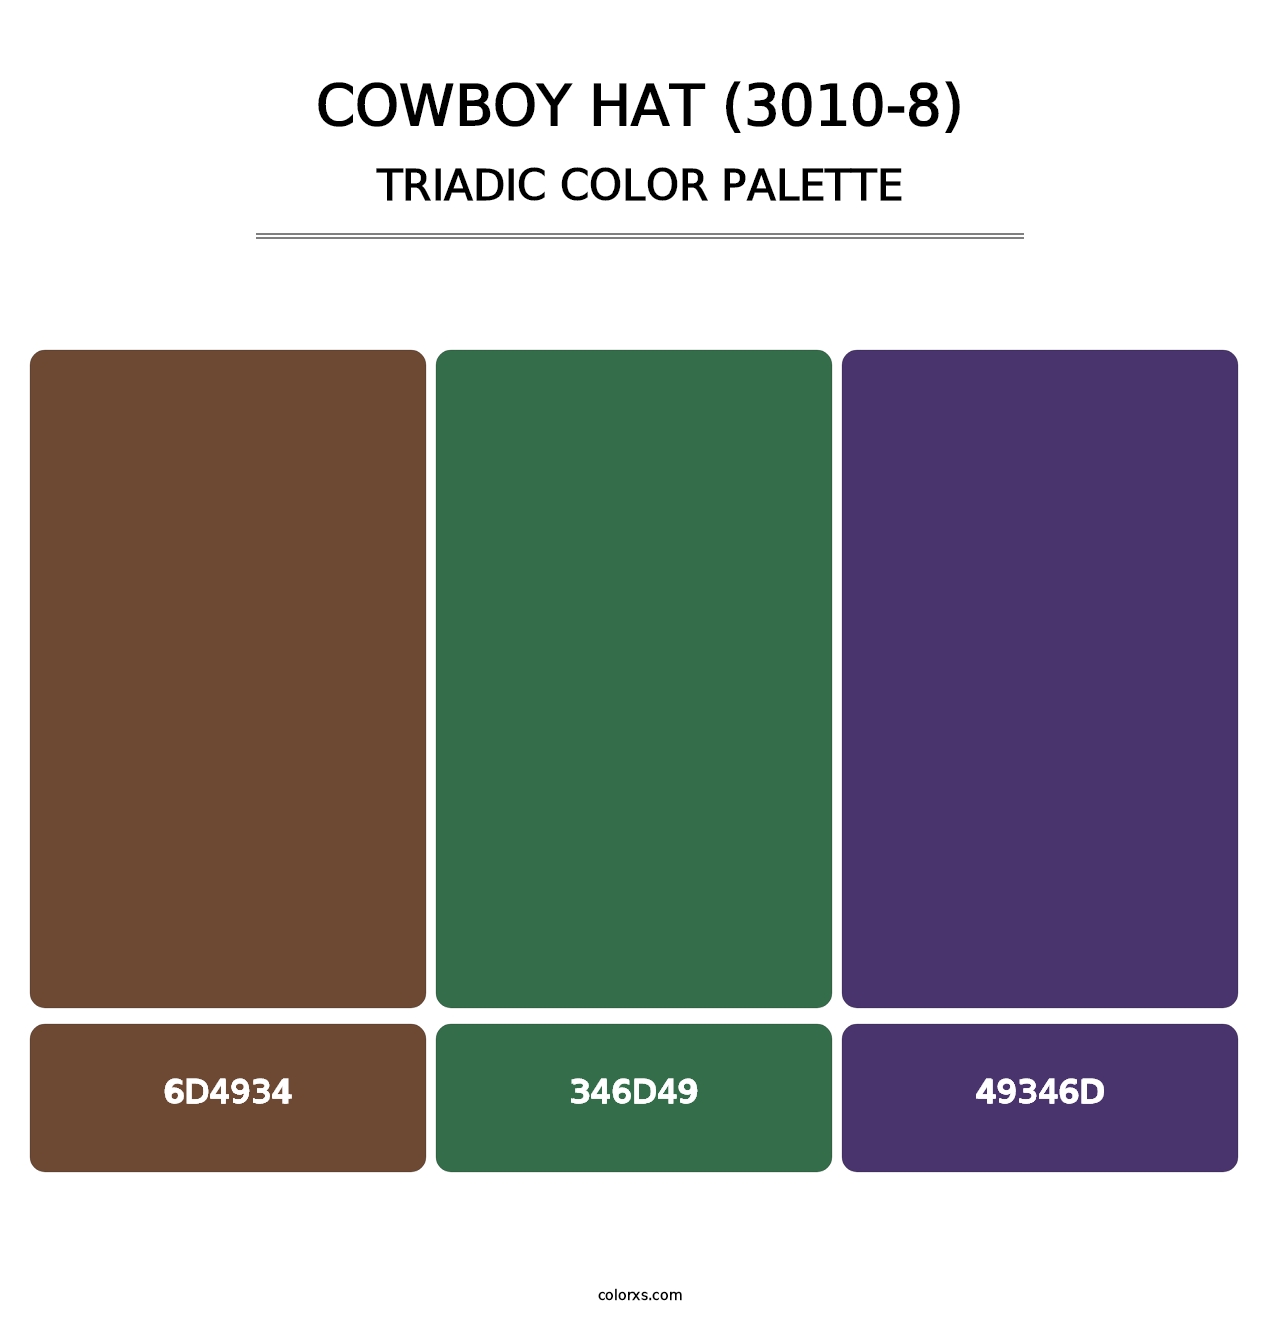 Cowboy Hat (3010-8) - Triadic Color Palette